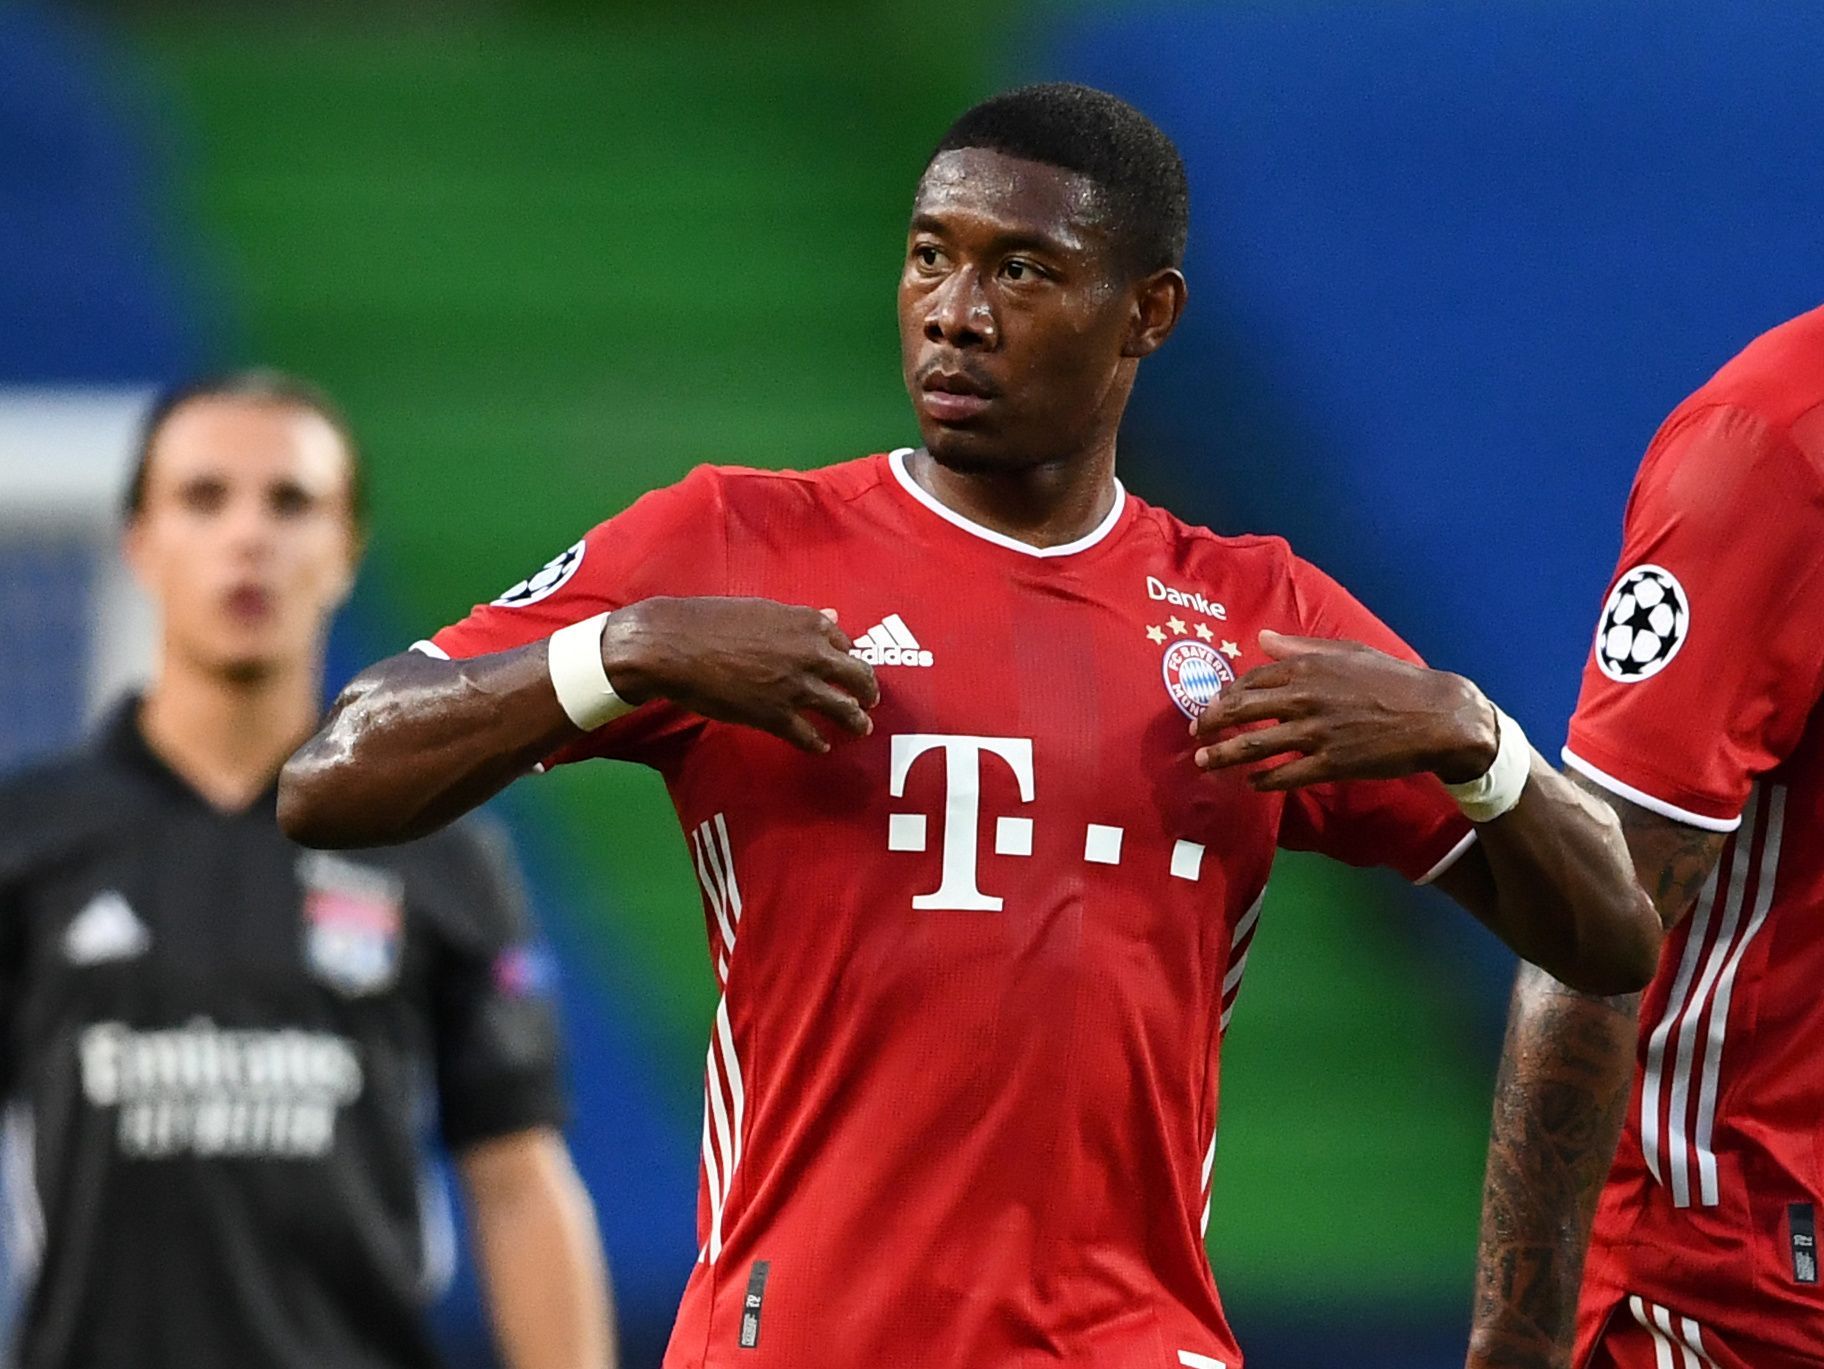 David Alaba slaví gól v semifinále LM Bayern - Lyon